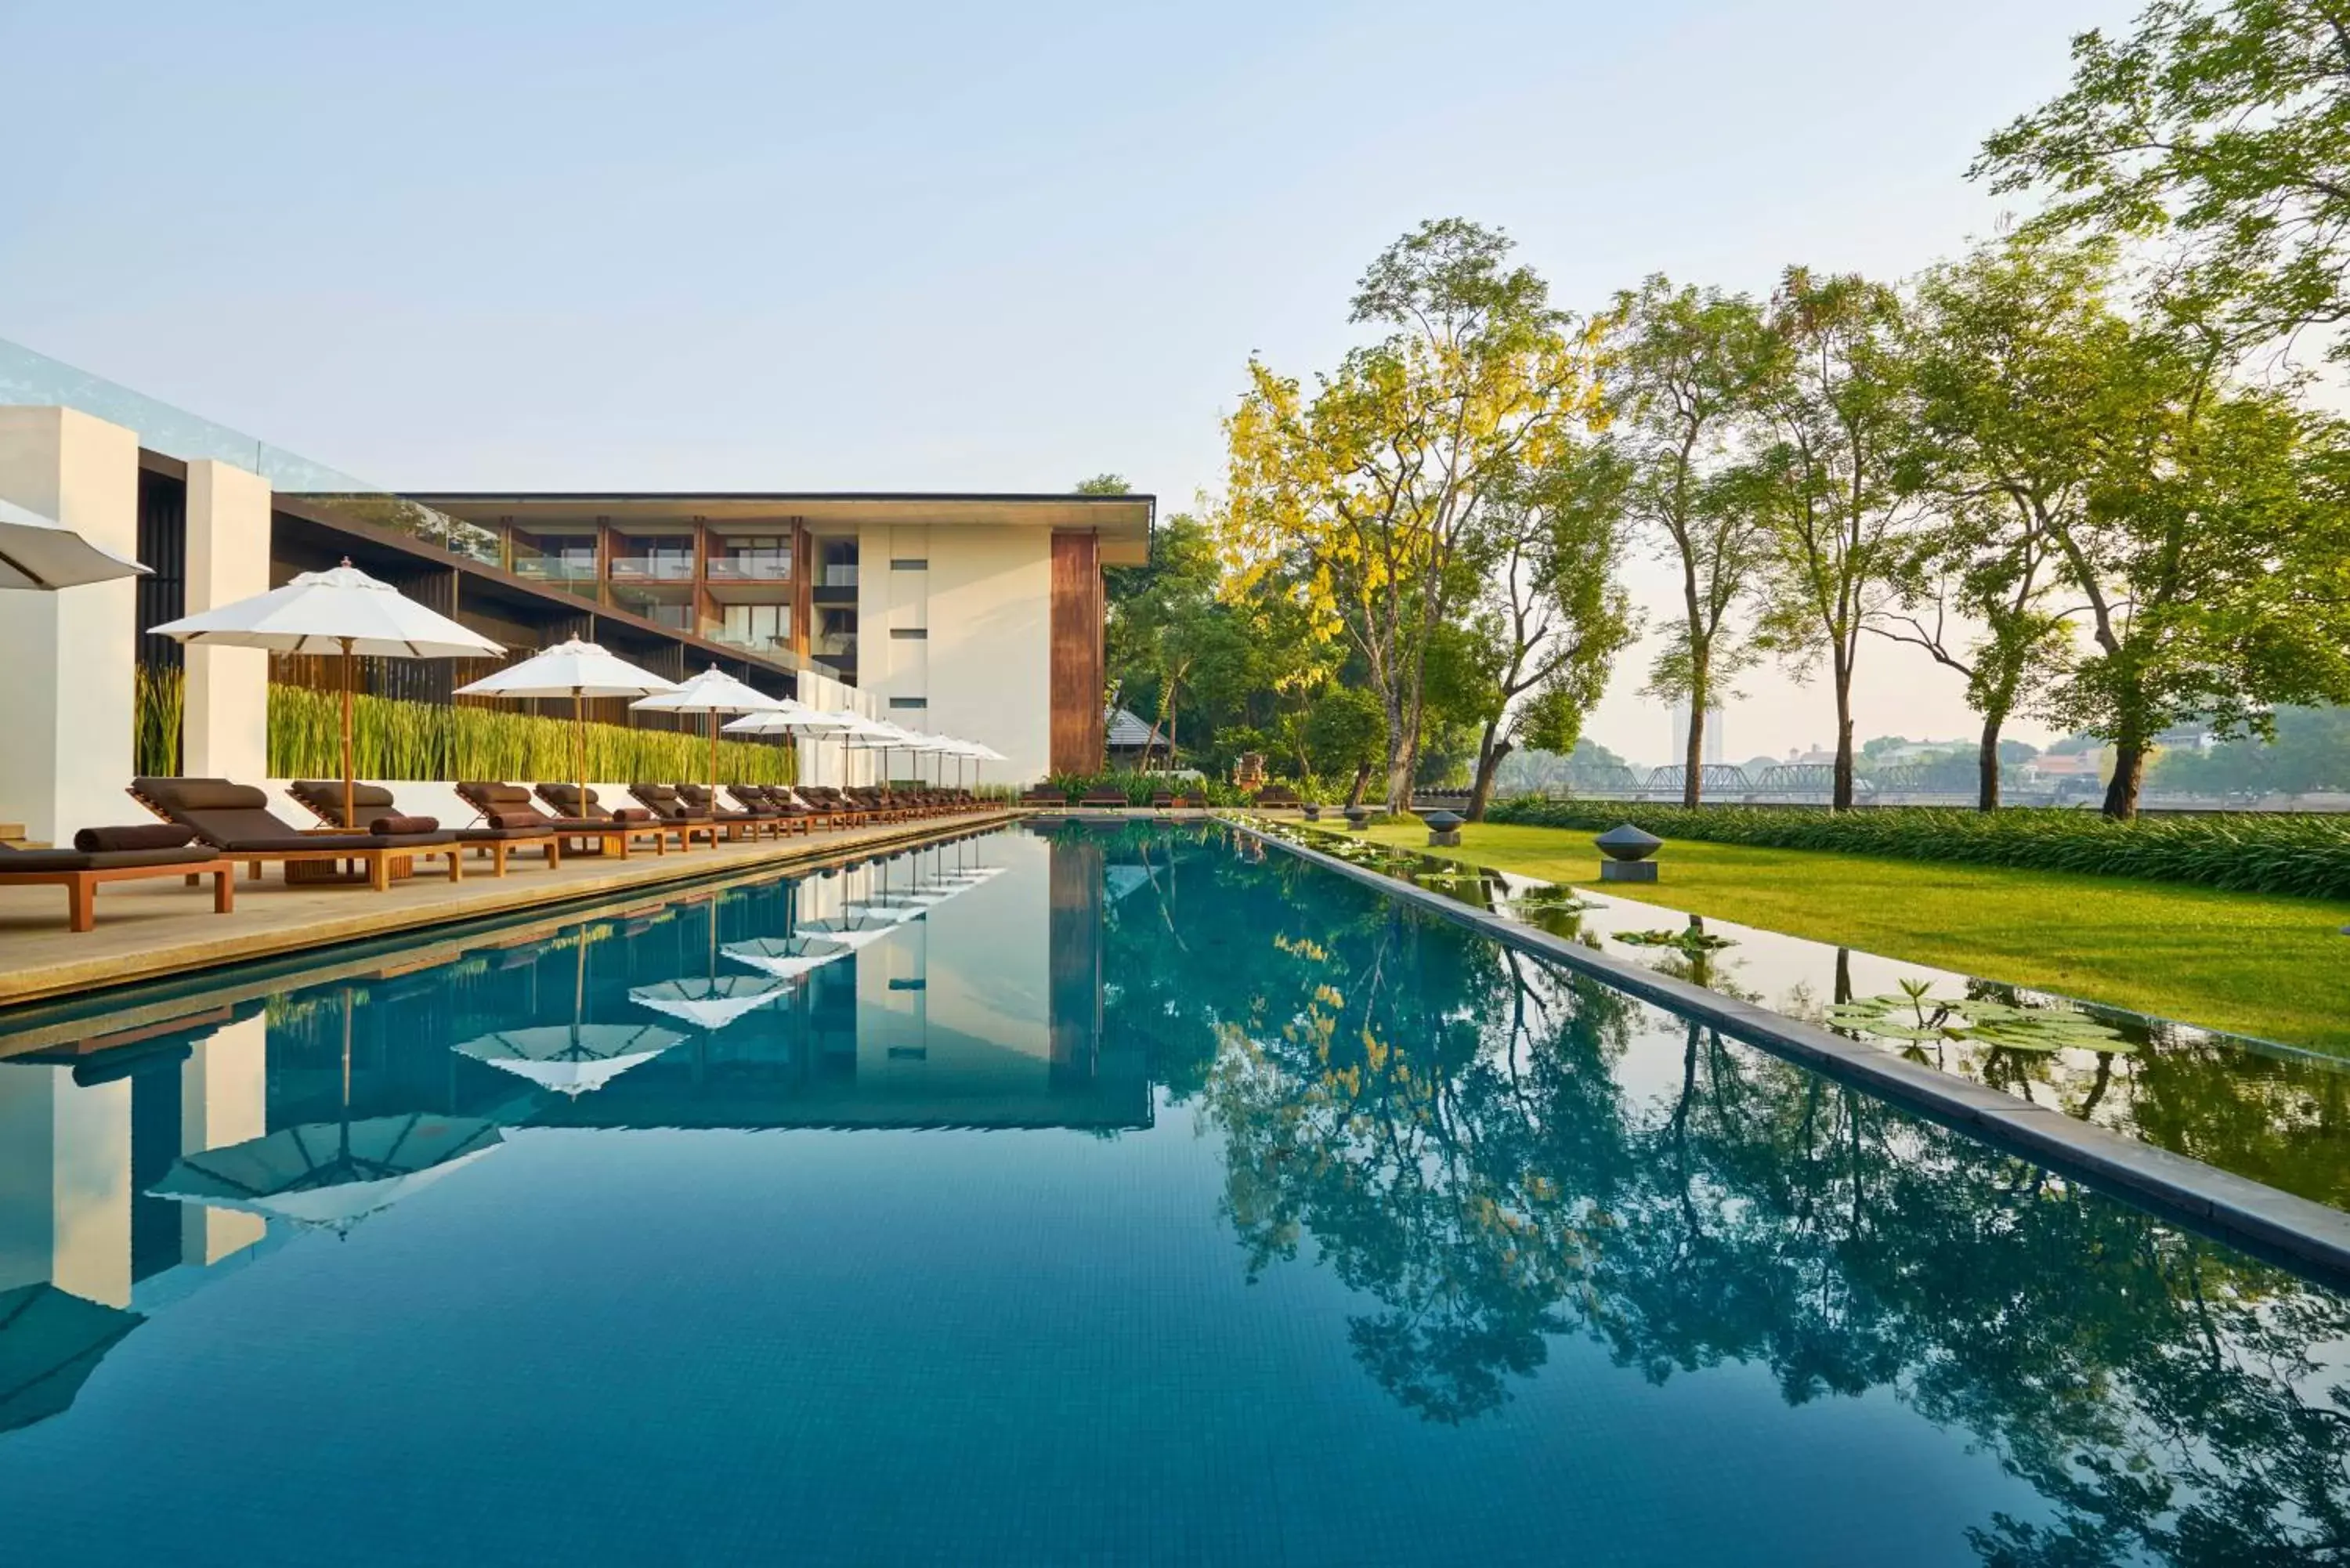 Swimming pool in Anantara Chiang Mai Resort